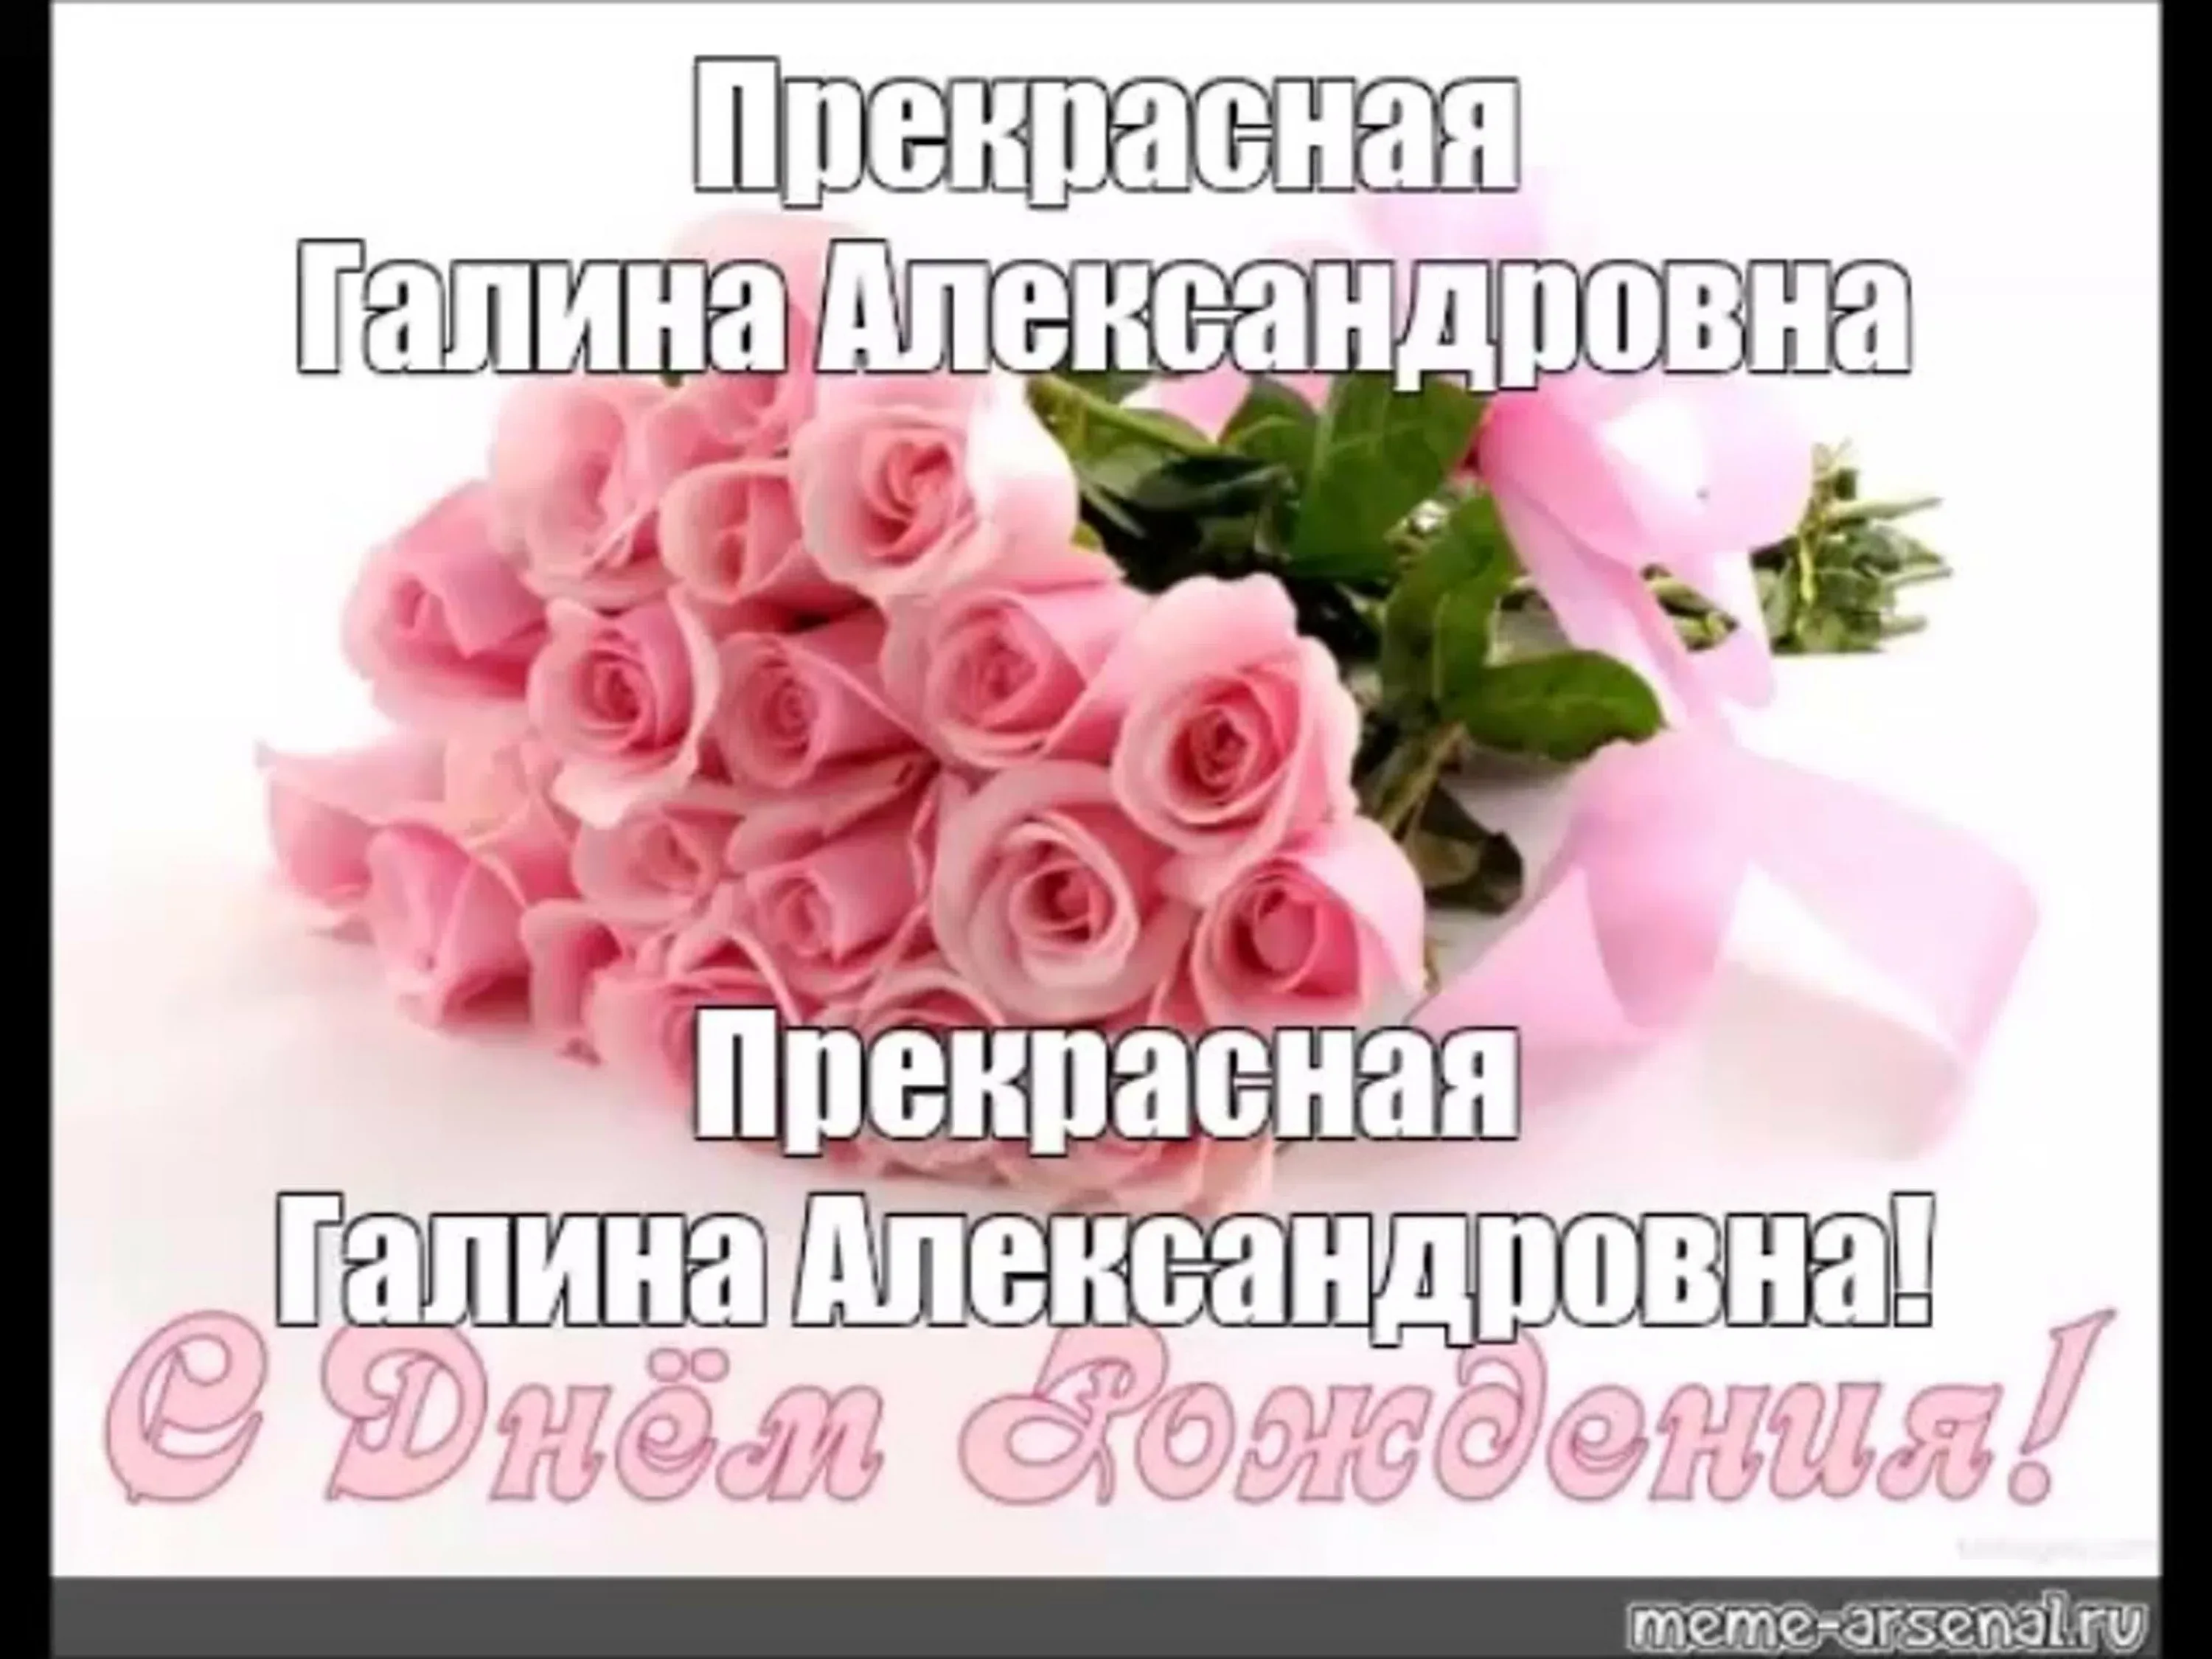 С днем рождения сестре на украинском. Поздравление с помолвкой. З днем народження. Поздравление с обручением пожелания. Поздравление с помоловко.